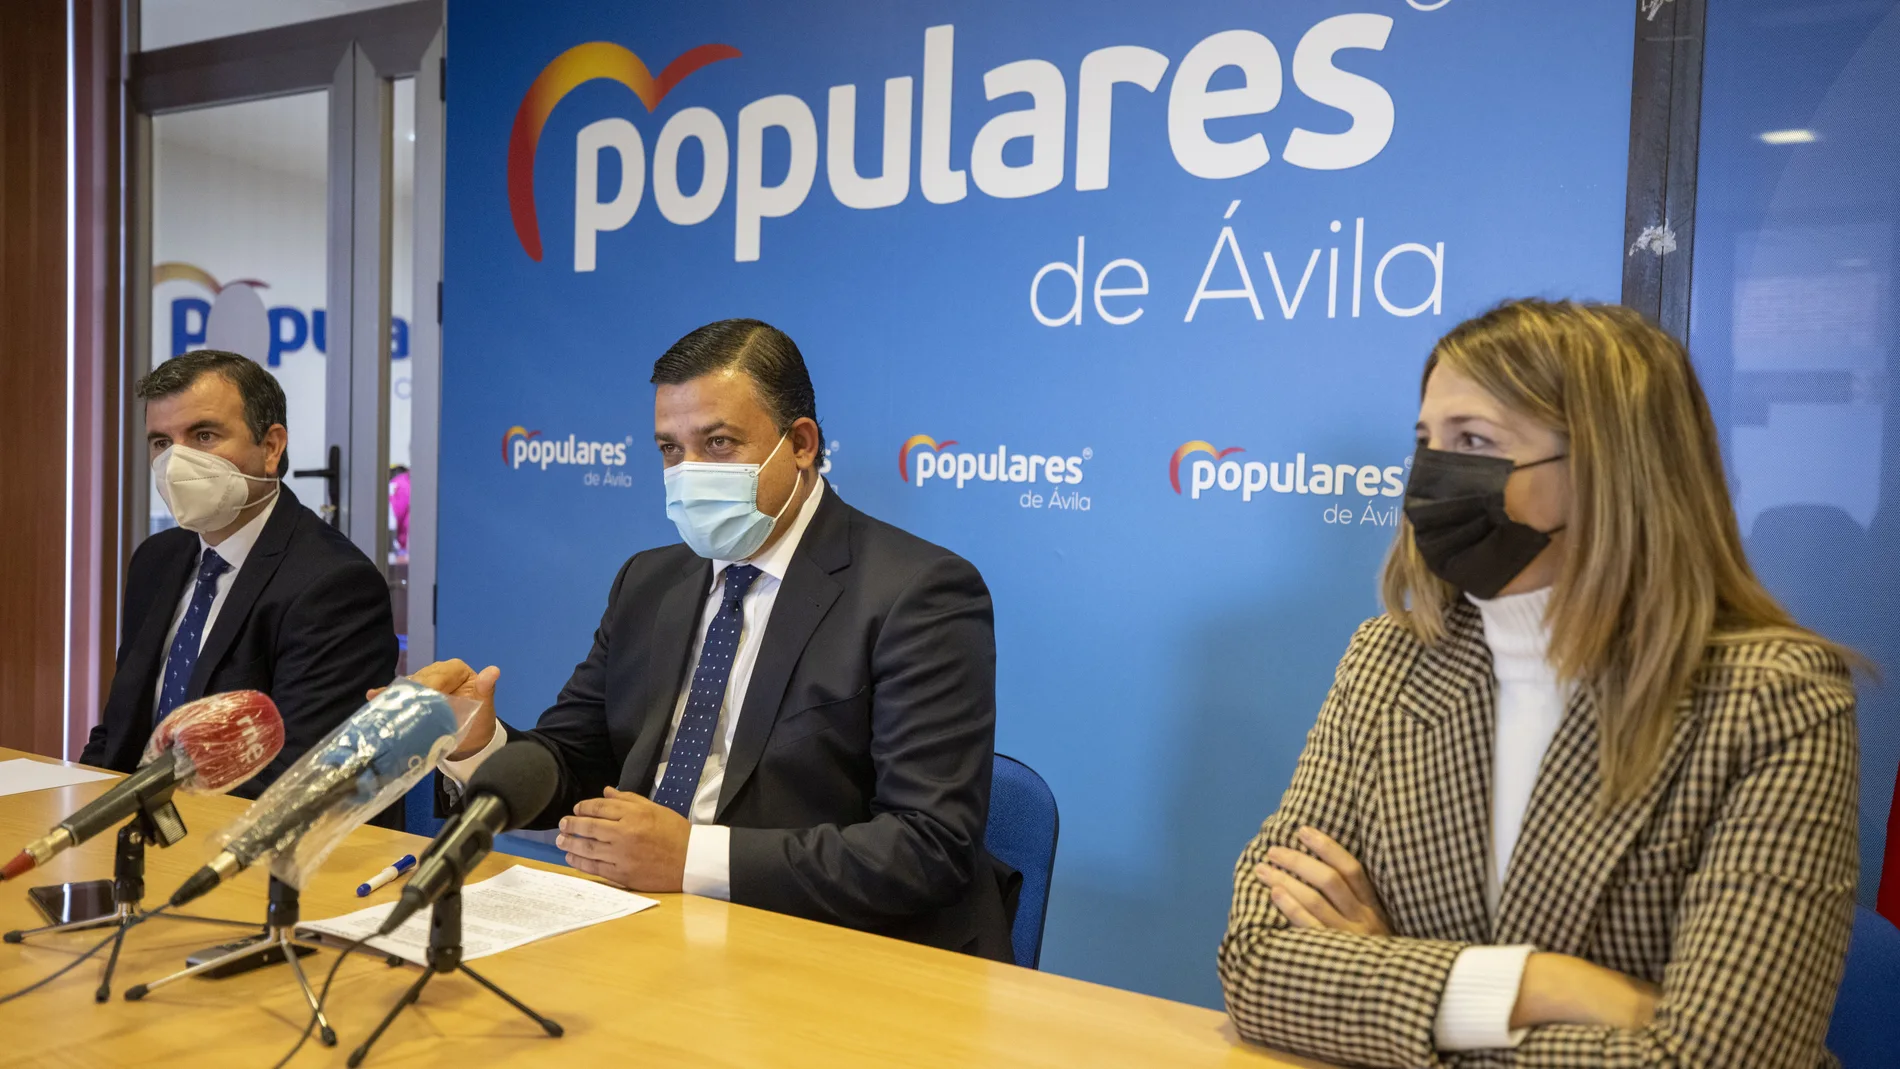 El presidente del PP de Ávila, Carlos García, junto con los parlamentarios nacionales Alicia García y Juan Pablo Martín, hace balance del primer año de la XIV Legislatura y de la labor del Gobierno central